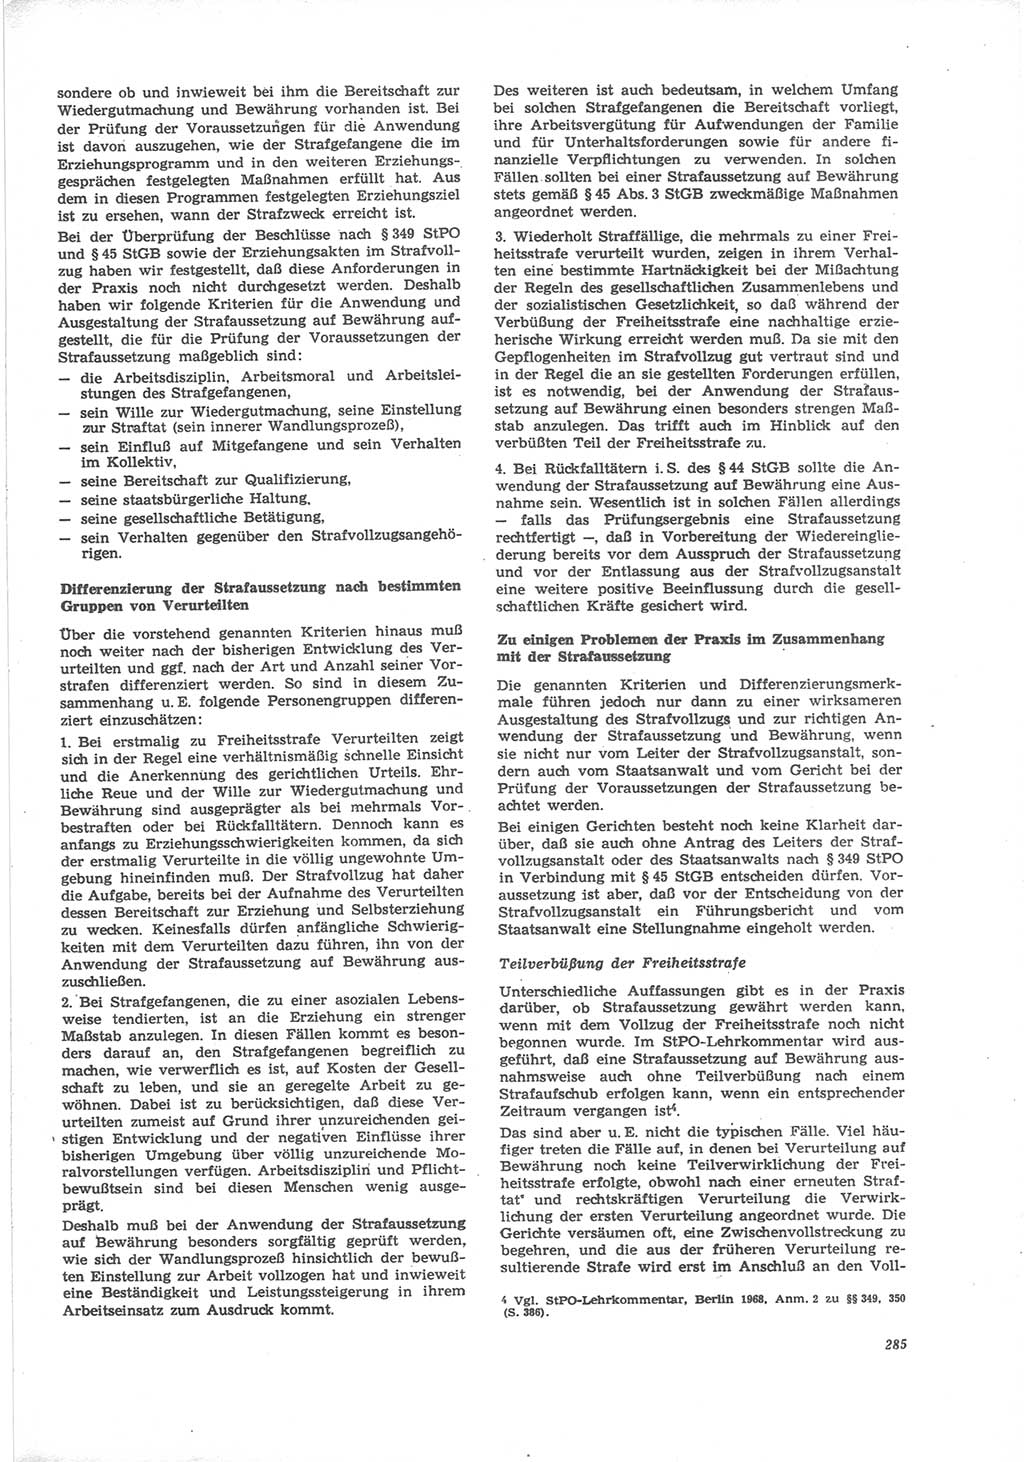 Neue Justiz (NJ), Zeitschrift für Recht und Rechtswissenschaft [Deutsche Demokratische Republik (DDR)], 24. Jahrgang 1970, Seite 285 (NJ DDR 1970, S. 285)